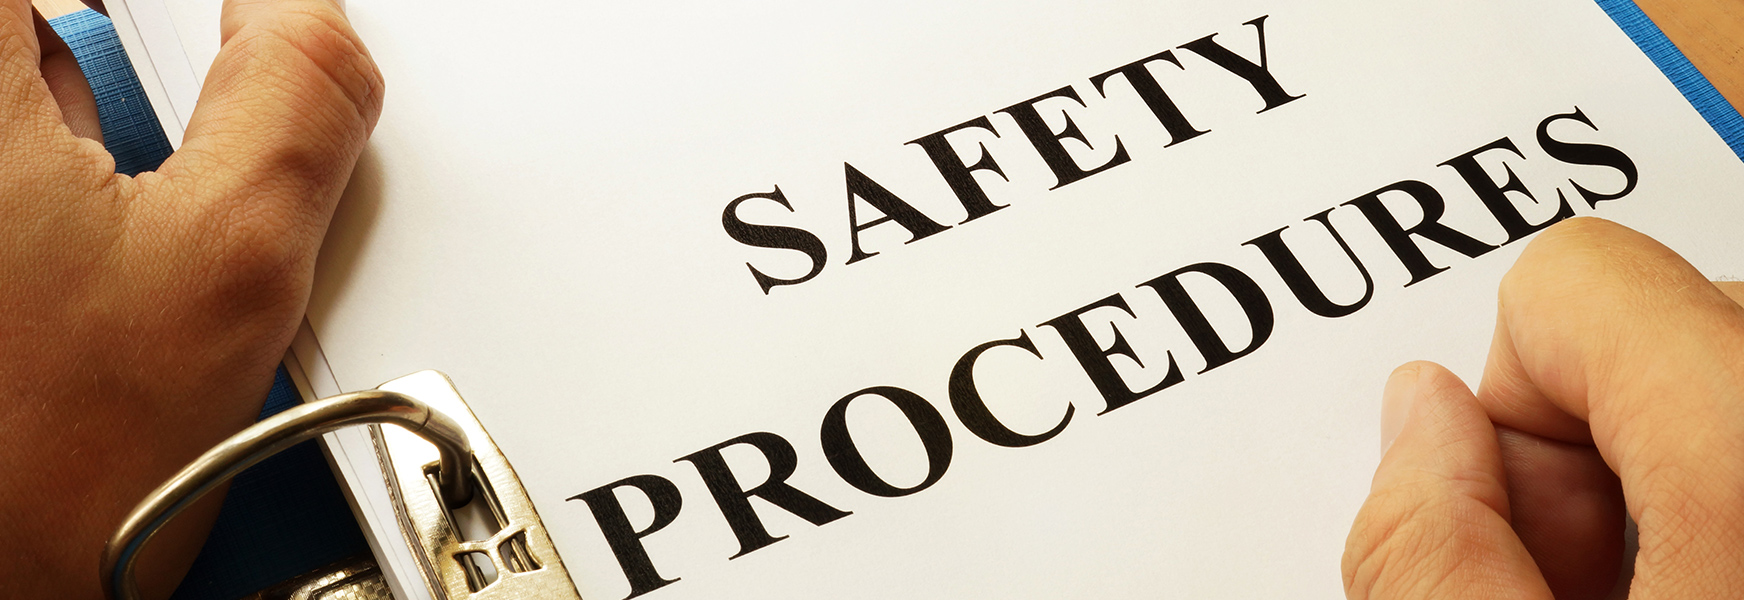 Safety Procedures binder